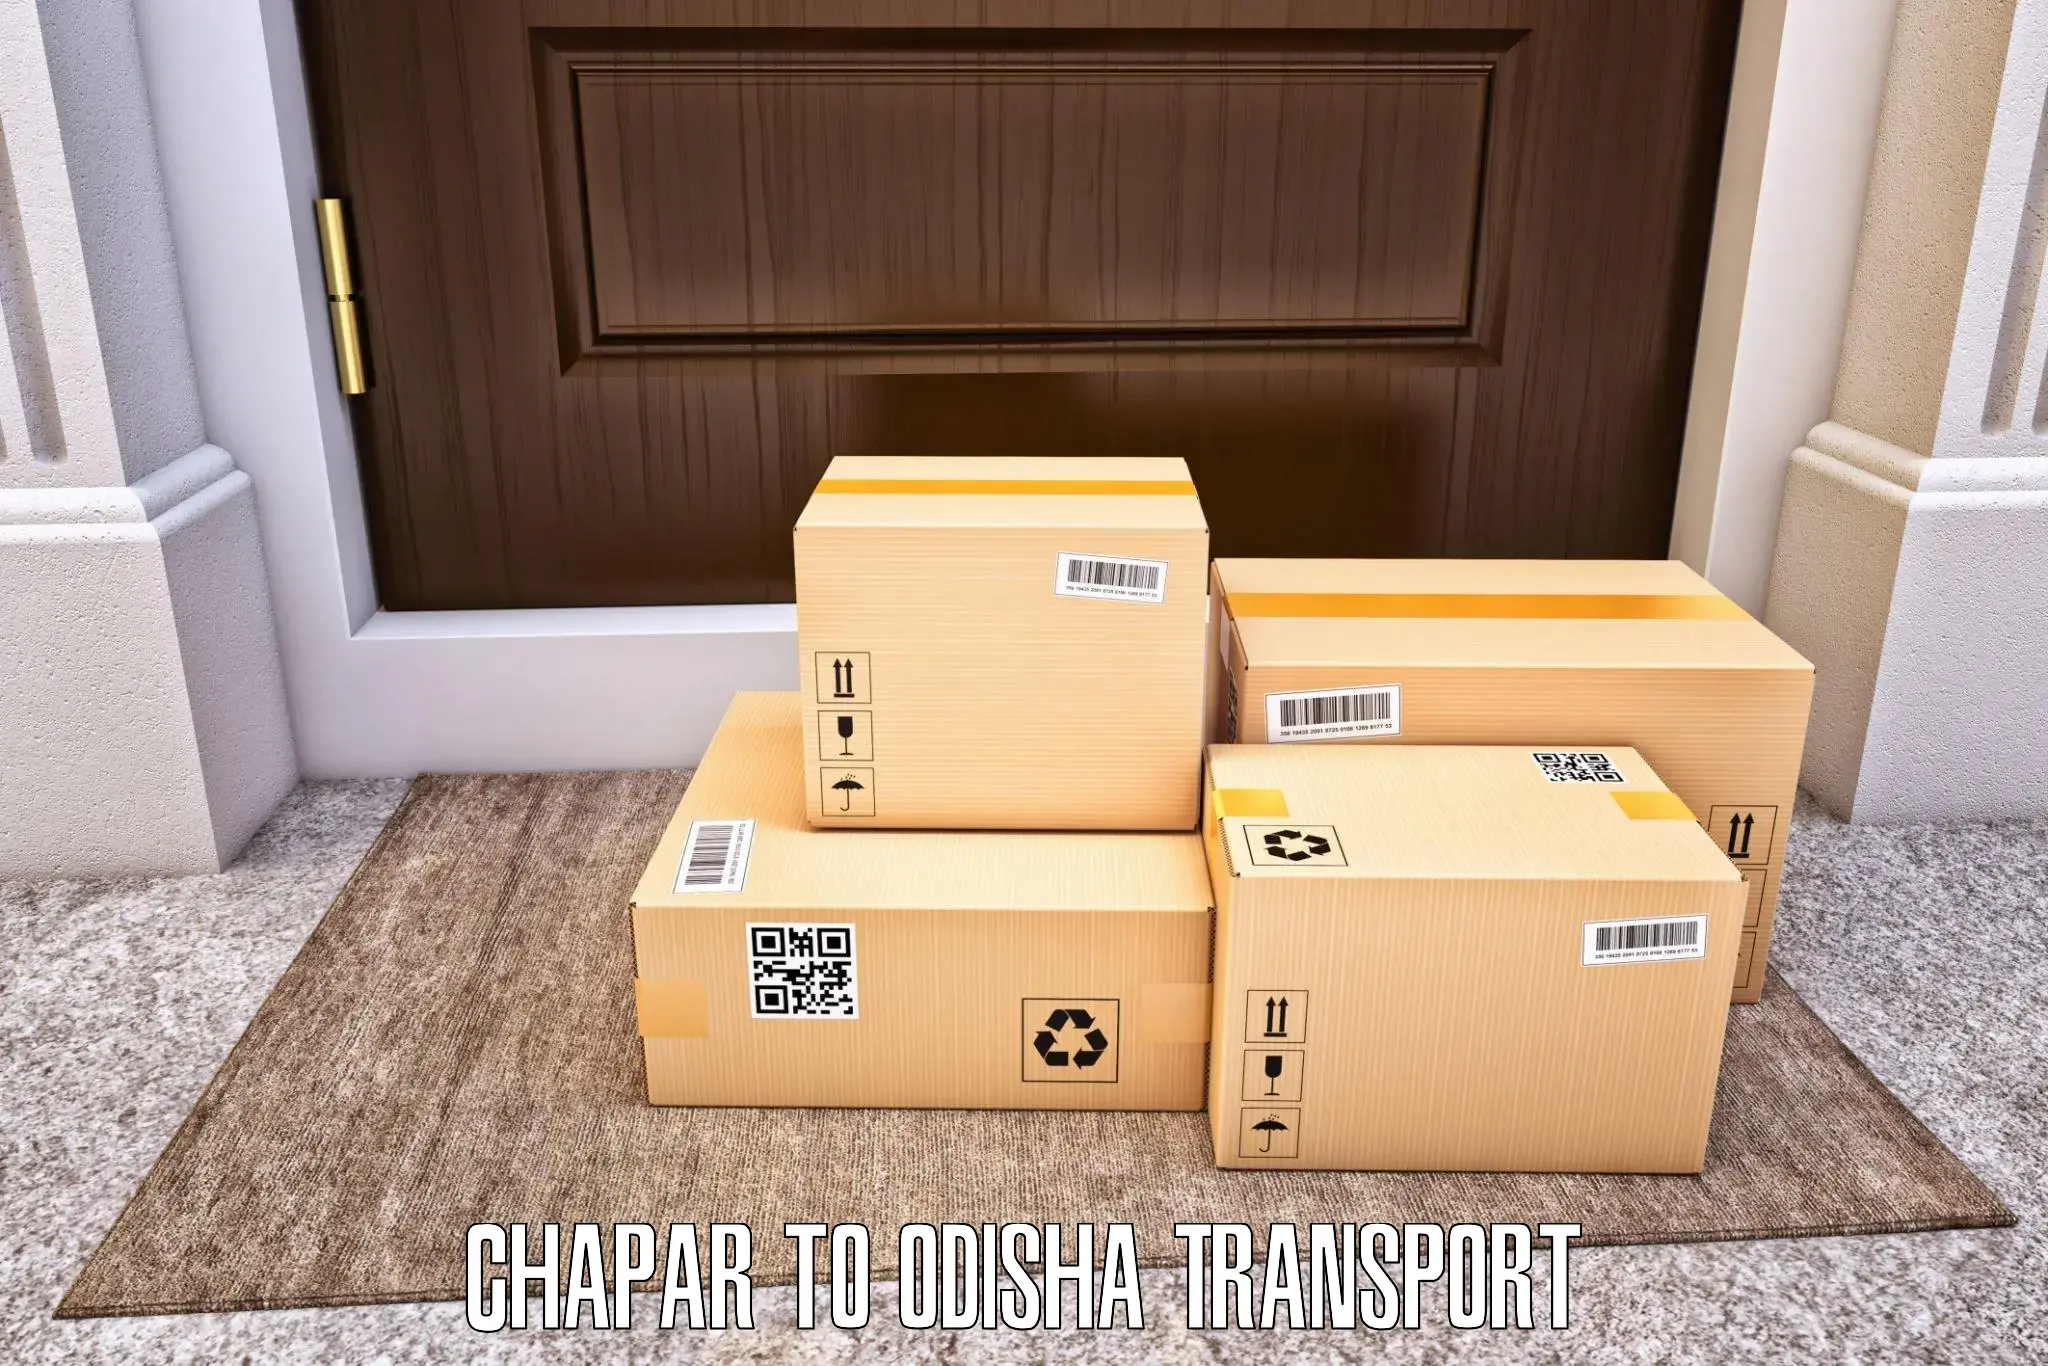 Daily parcel service transport Chapar to Ganjam